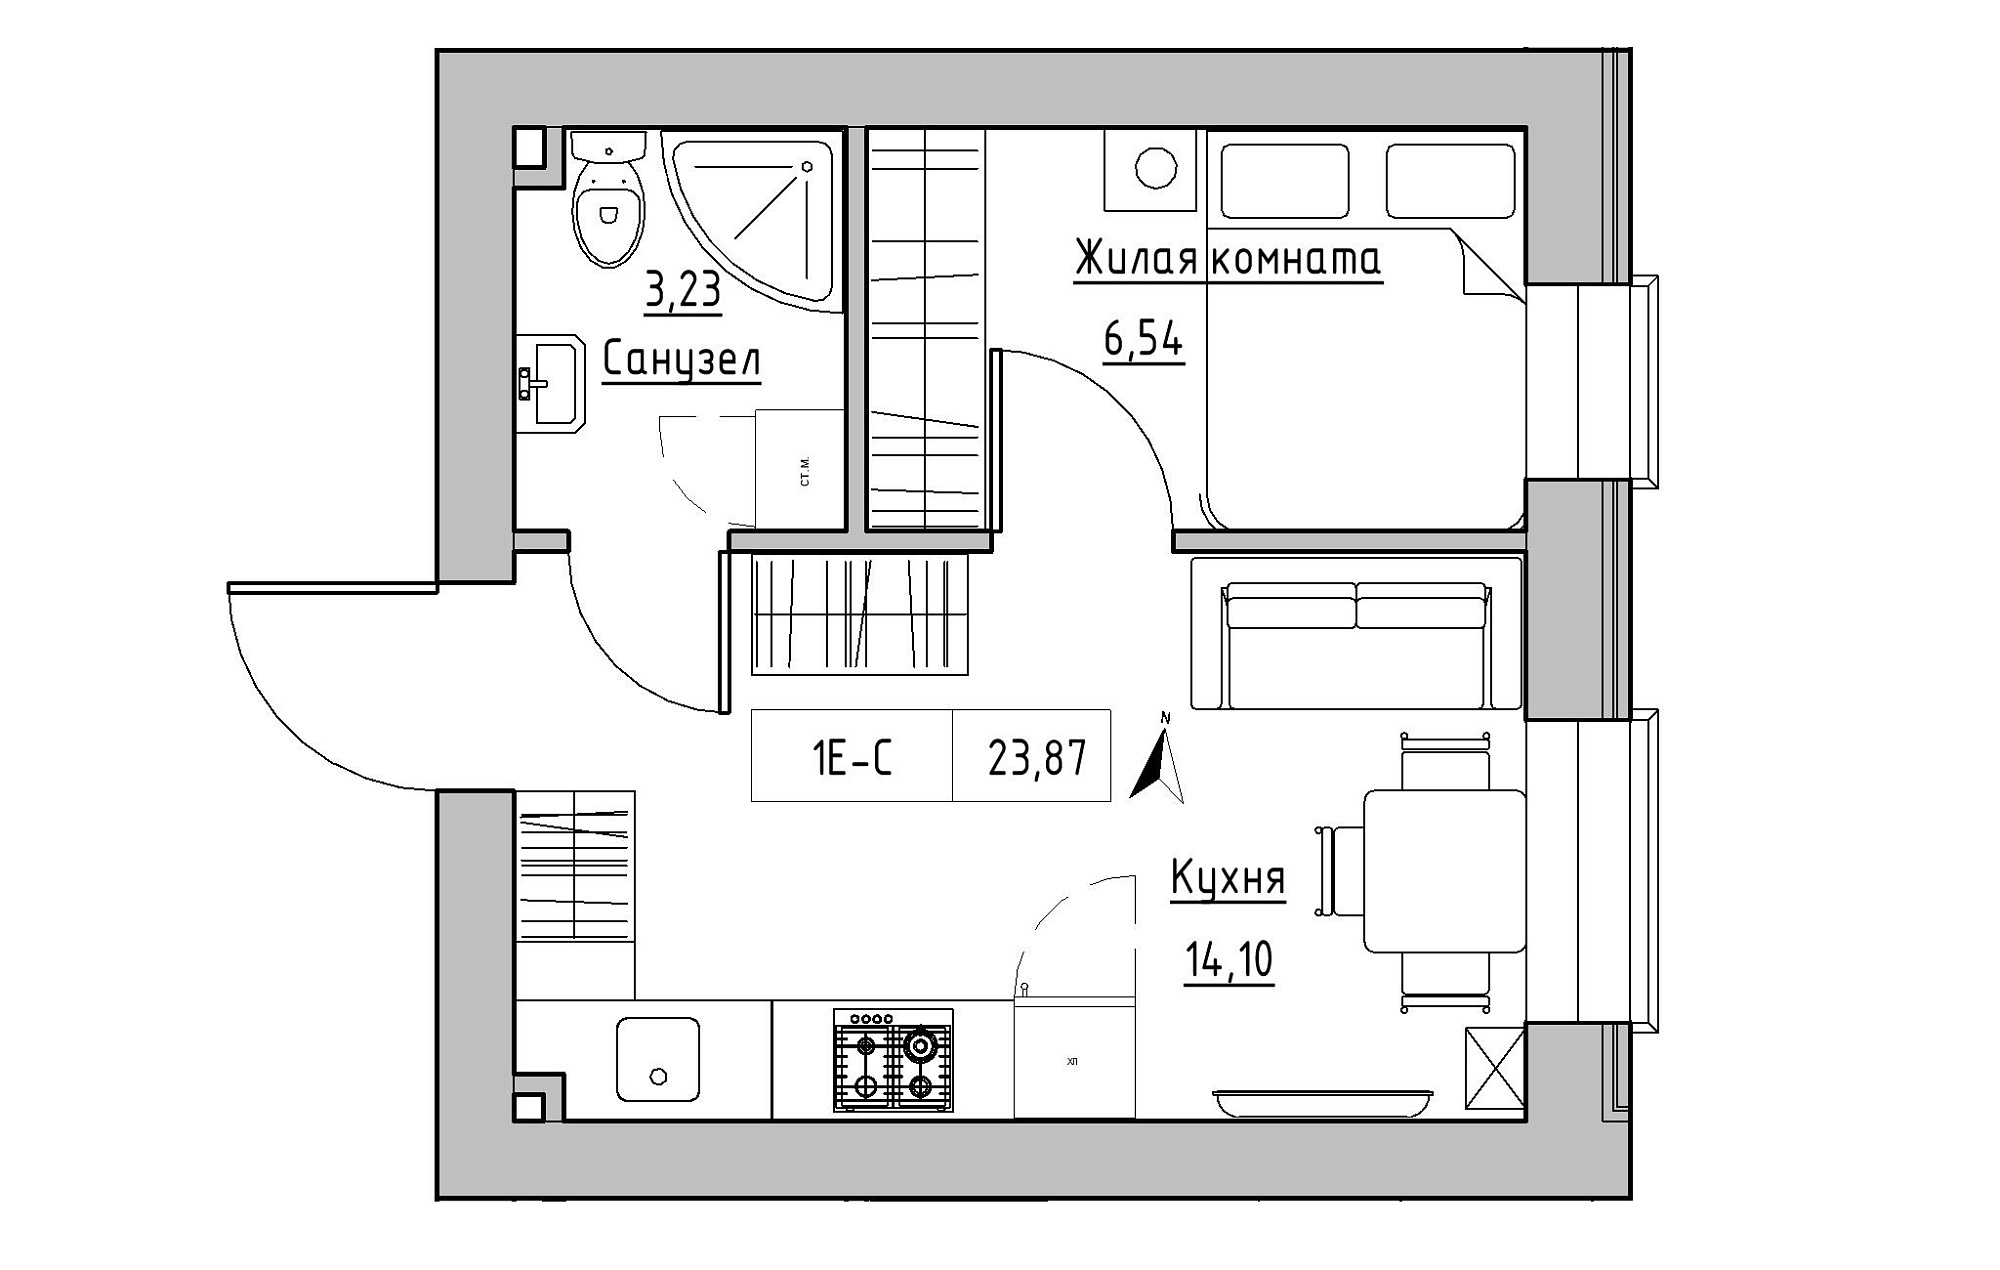 Планування 1-к квартира площею 23.87м2, KS-019-04/0004.